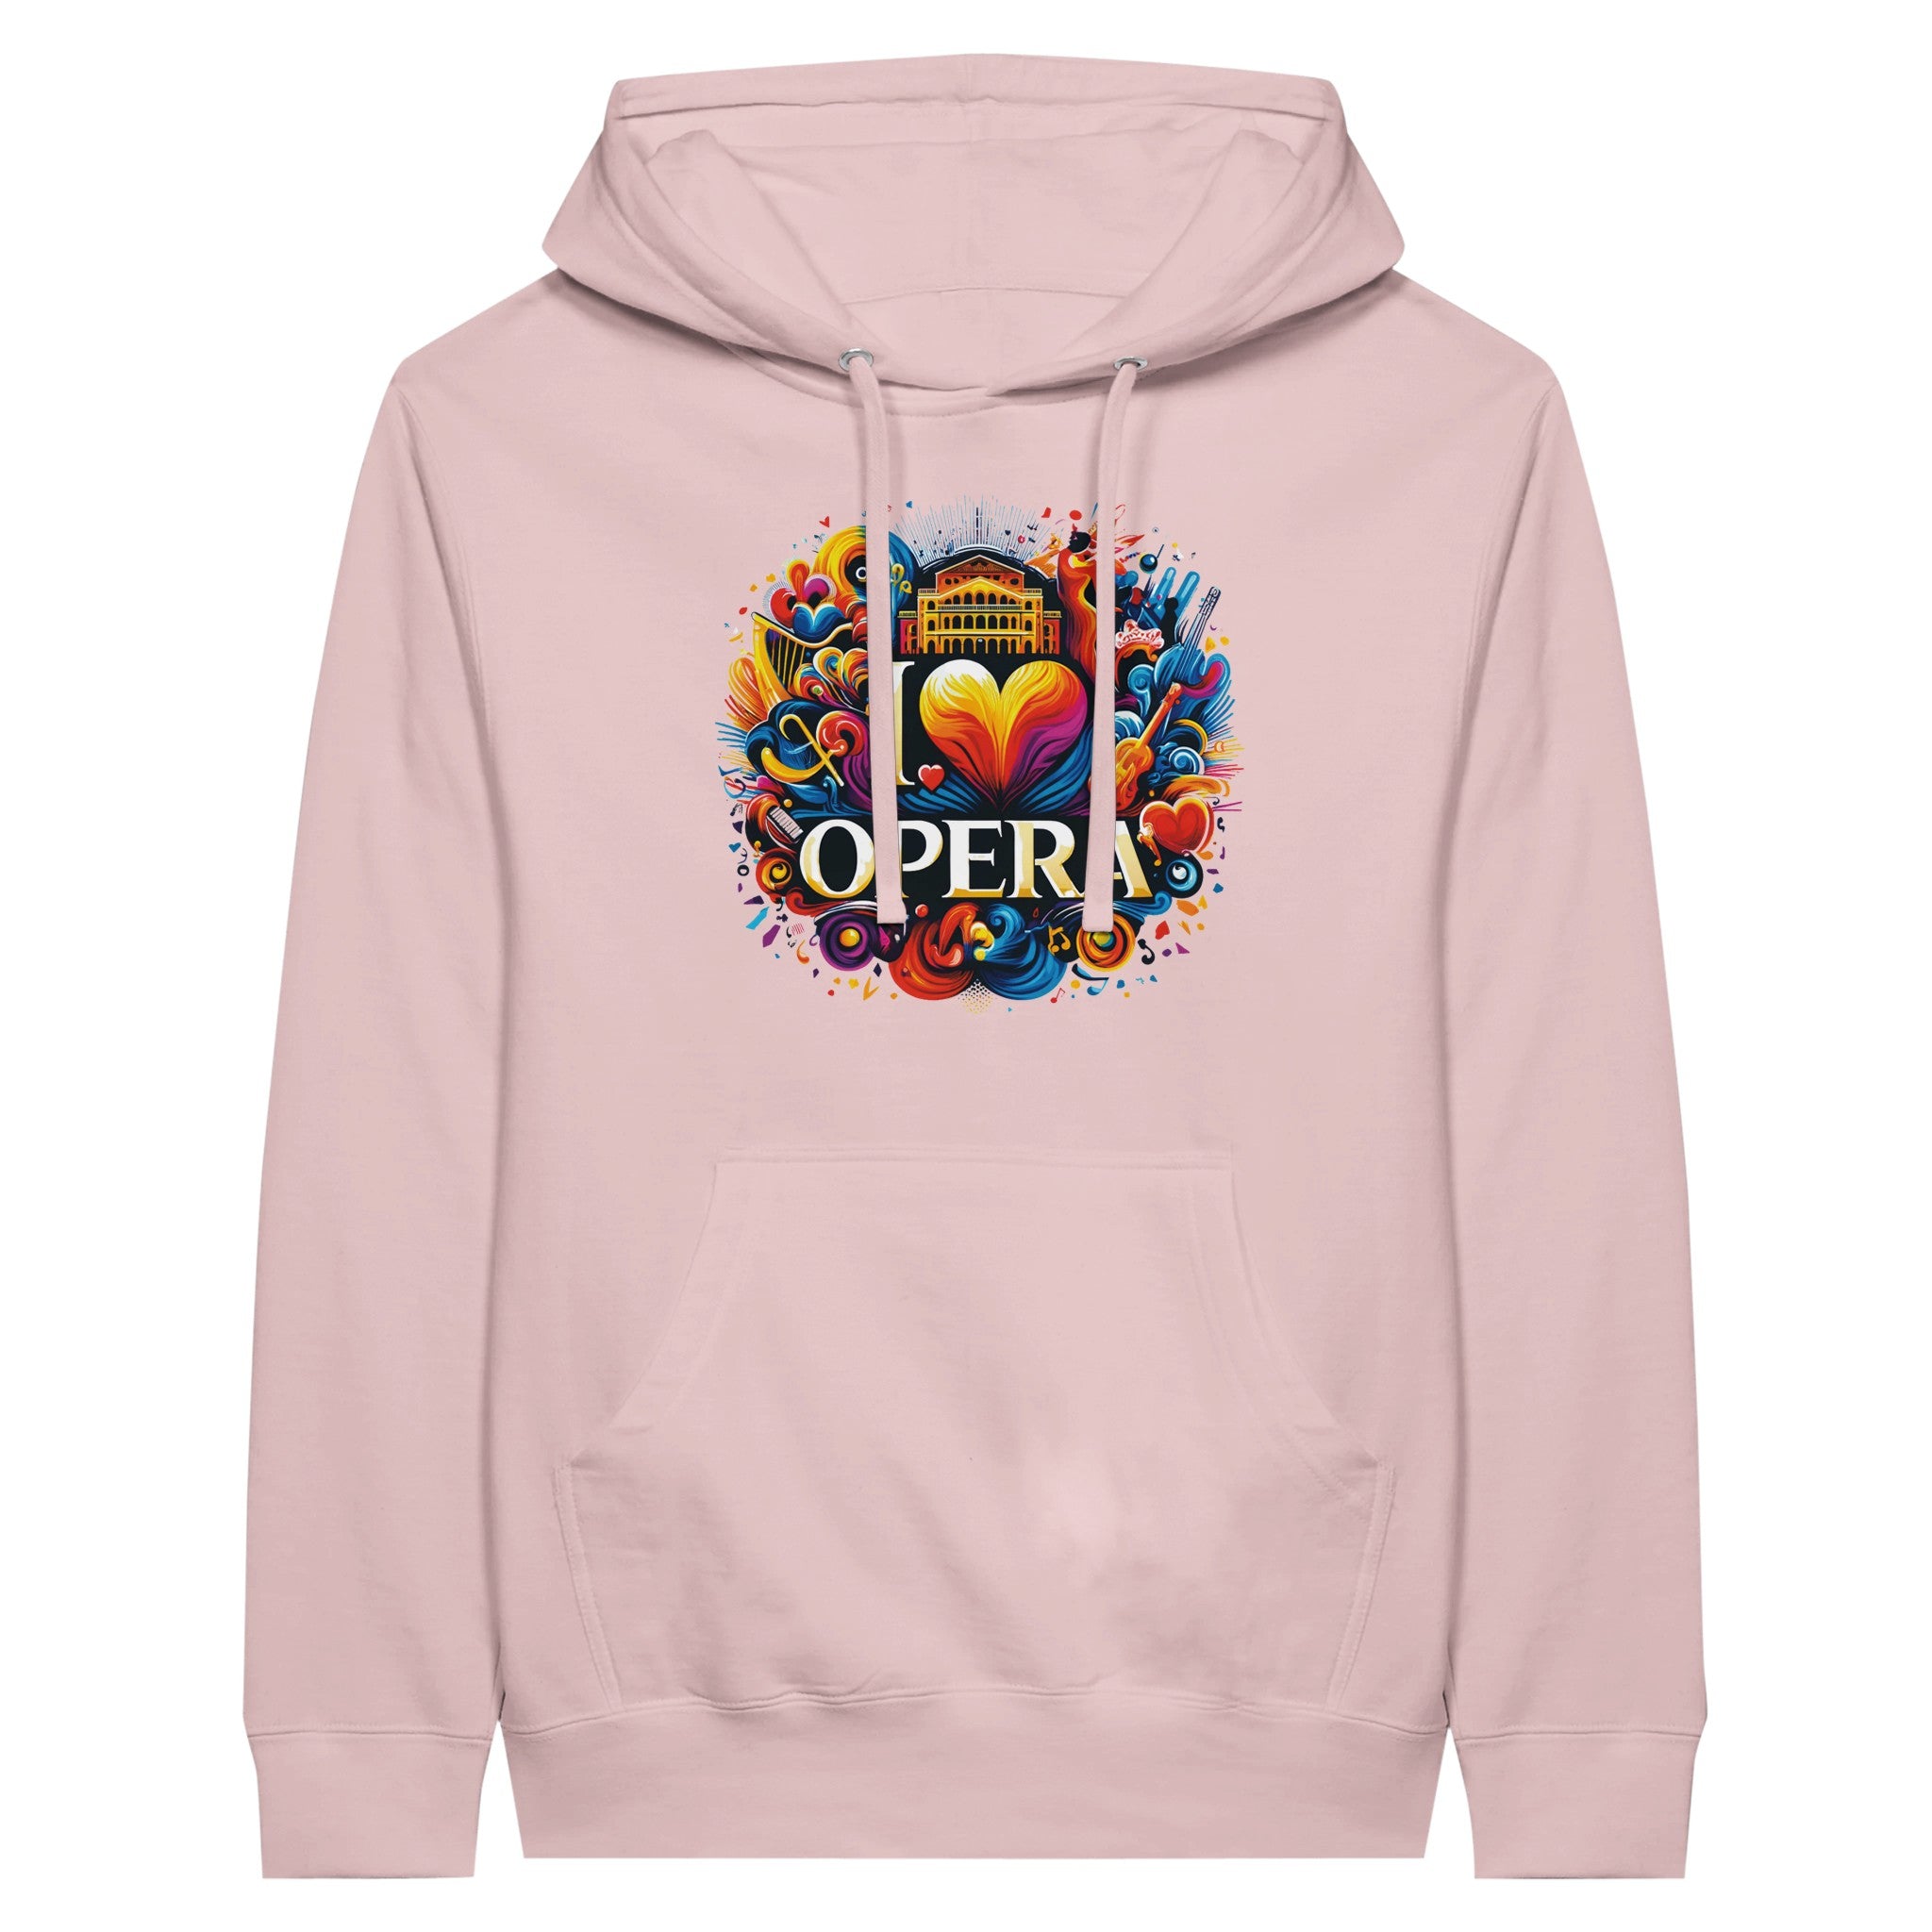 "I Love Opera" Premium Unisex Pullover Hoodie